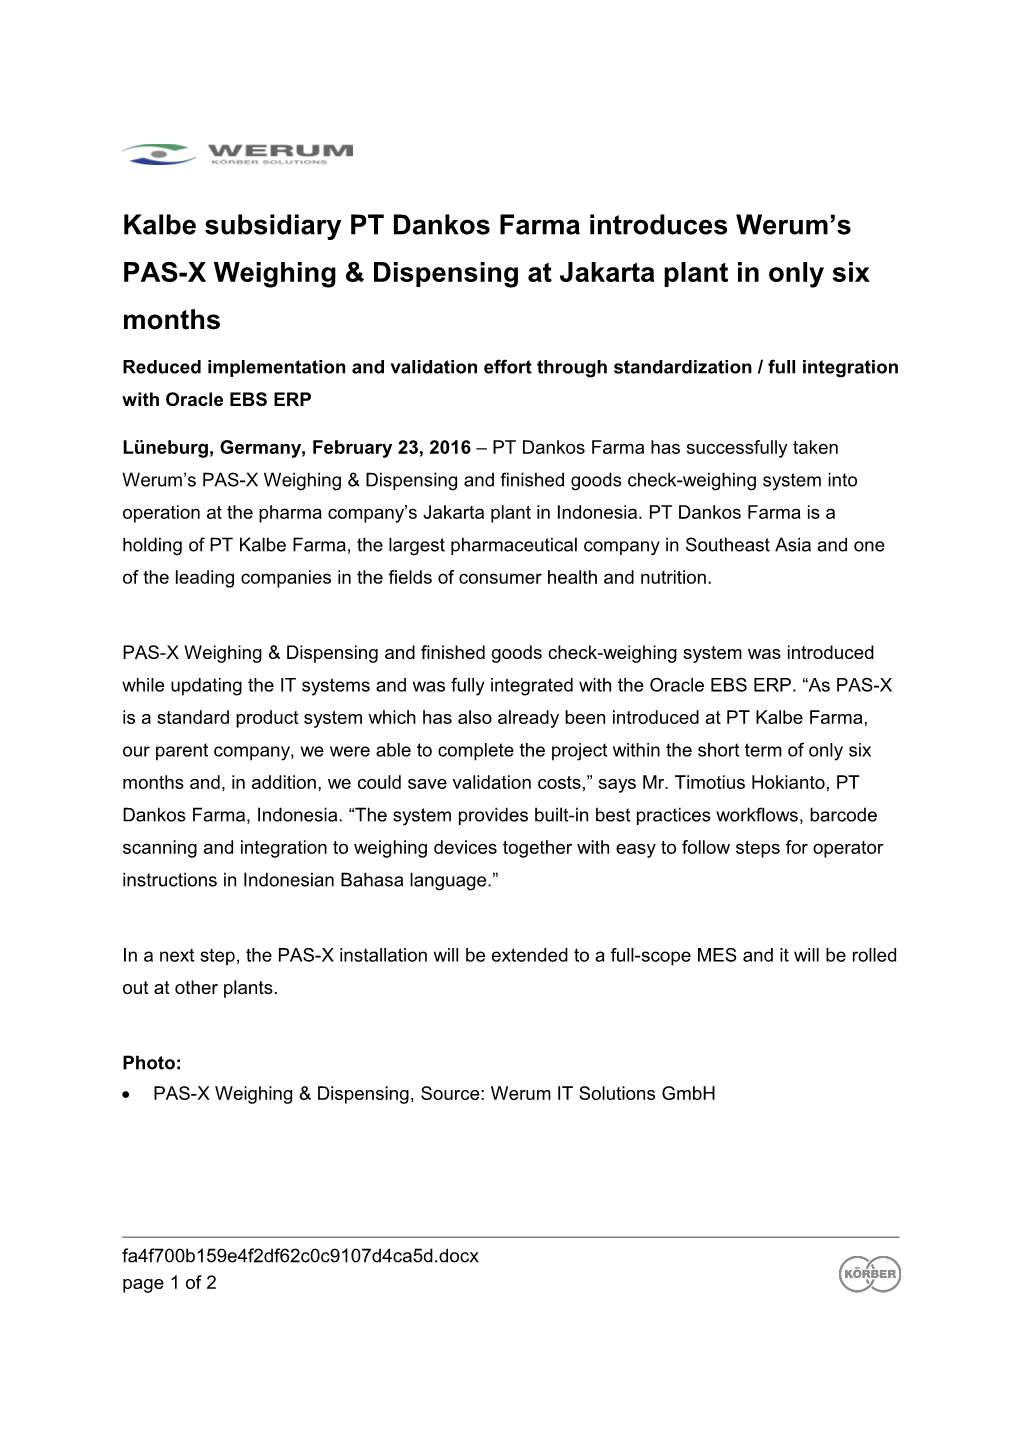 Kalbe Subsidiary PT Dankos Farma Introduces Werum S PAS-X Weighing & Dispensing at Jakarta